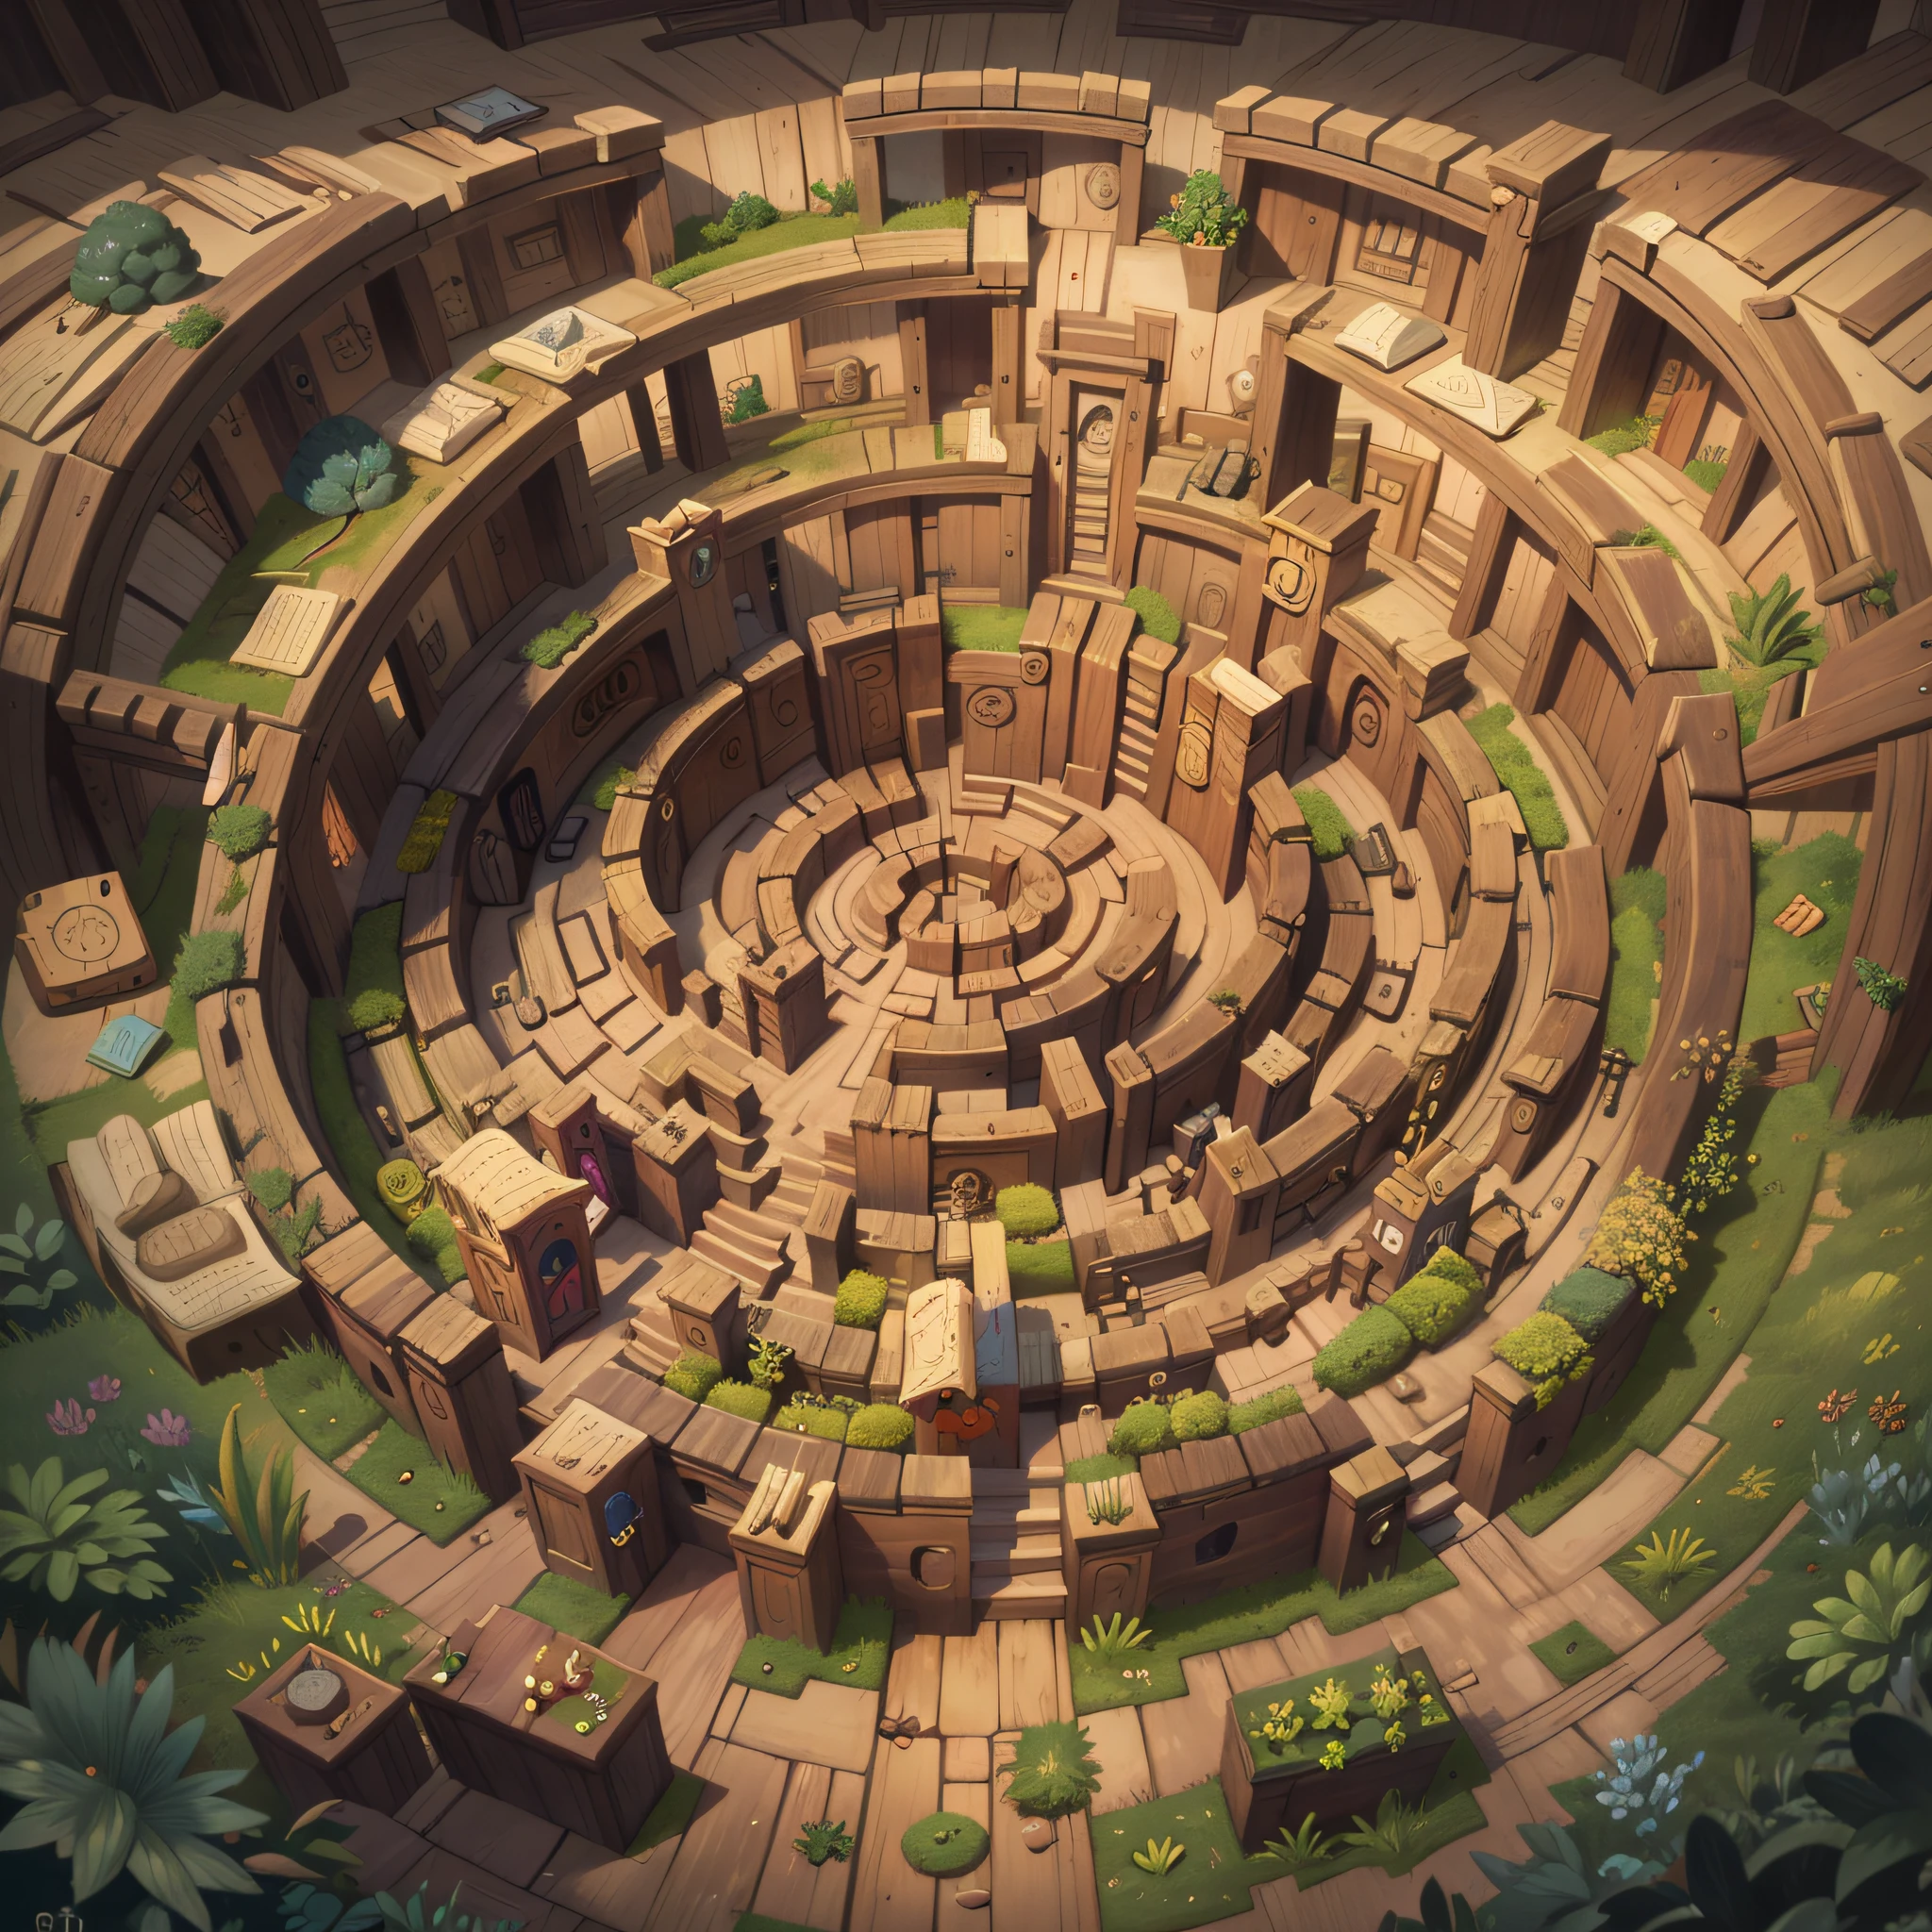 Entrer dans un grand labyrinthe magique; labyrinthe classique, labyrinthe en forme de spirale, labyrinthe avec plusieurs lits, labyrinthe avec des trésors, des labyrinthes pleins d&#39;obstacles